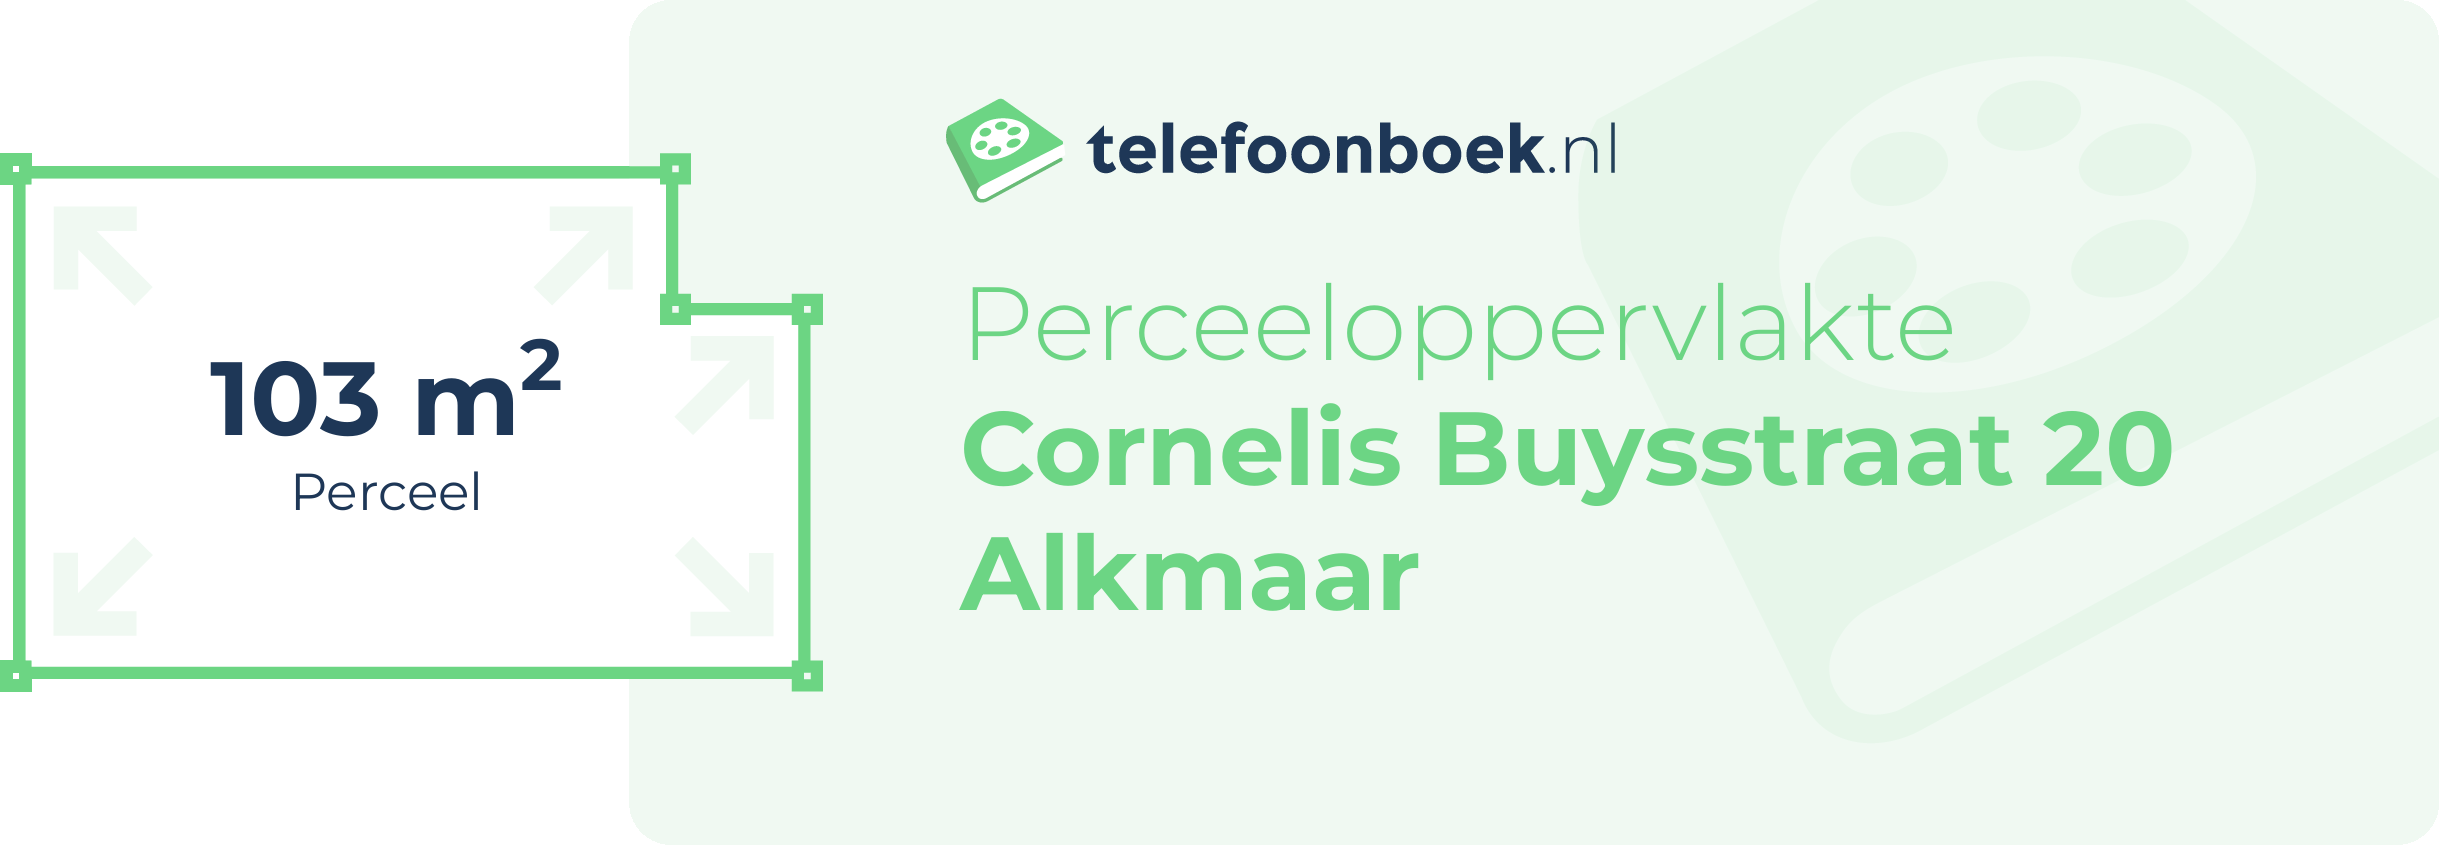 Perceeloppervlakte Cornelis Buysstraat 20 Alkmaar